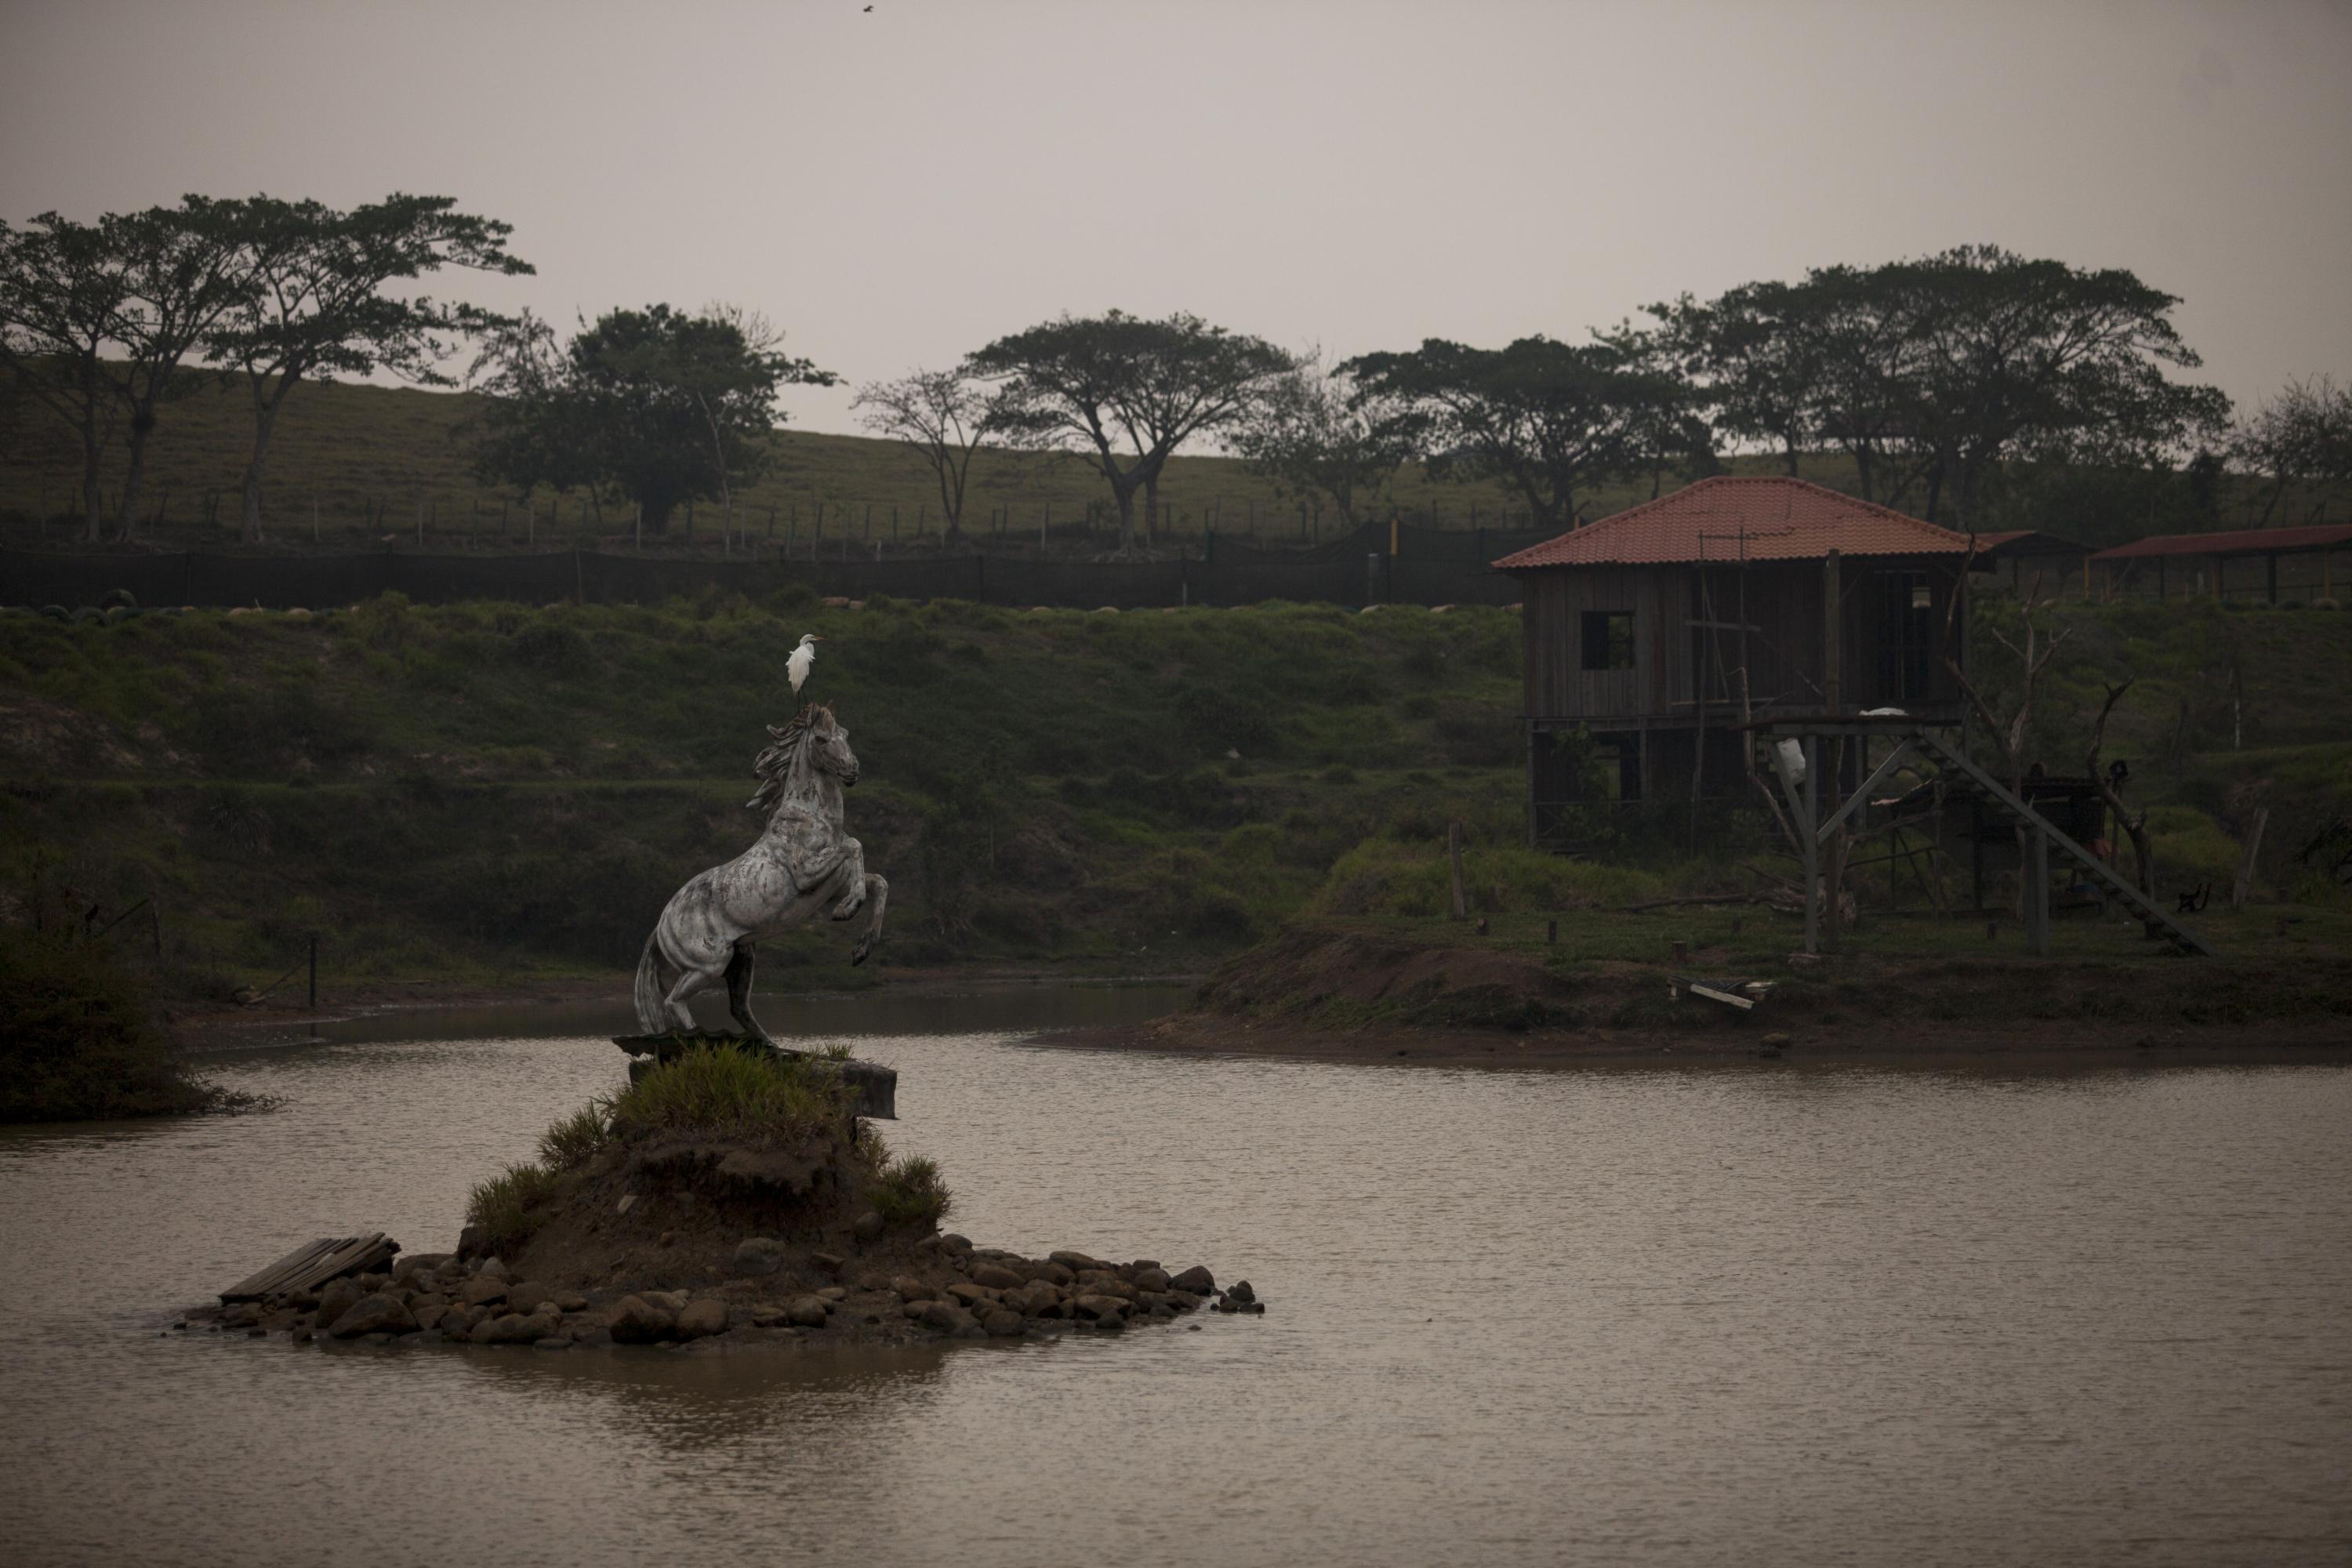 La escultura de un caballo que relincha decora el islote que se erosiona a pedazos en medio de la laguna. Foto de El Faro, por Víctor Peña.